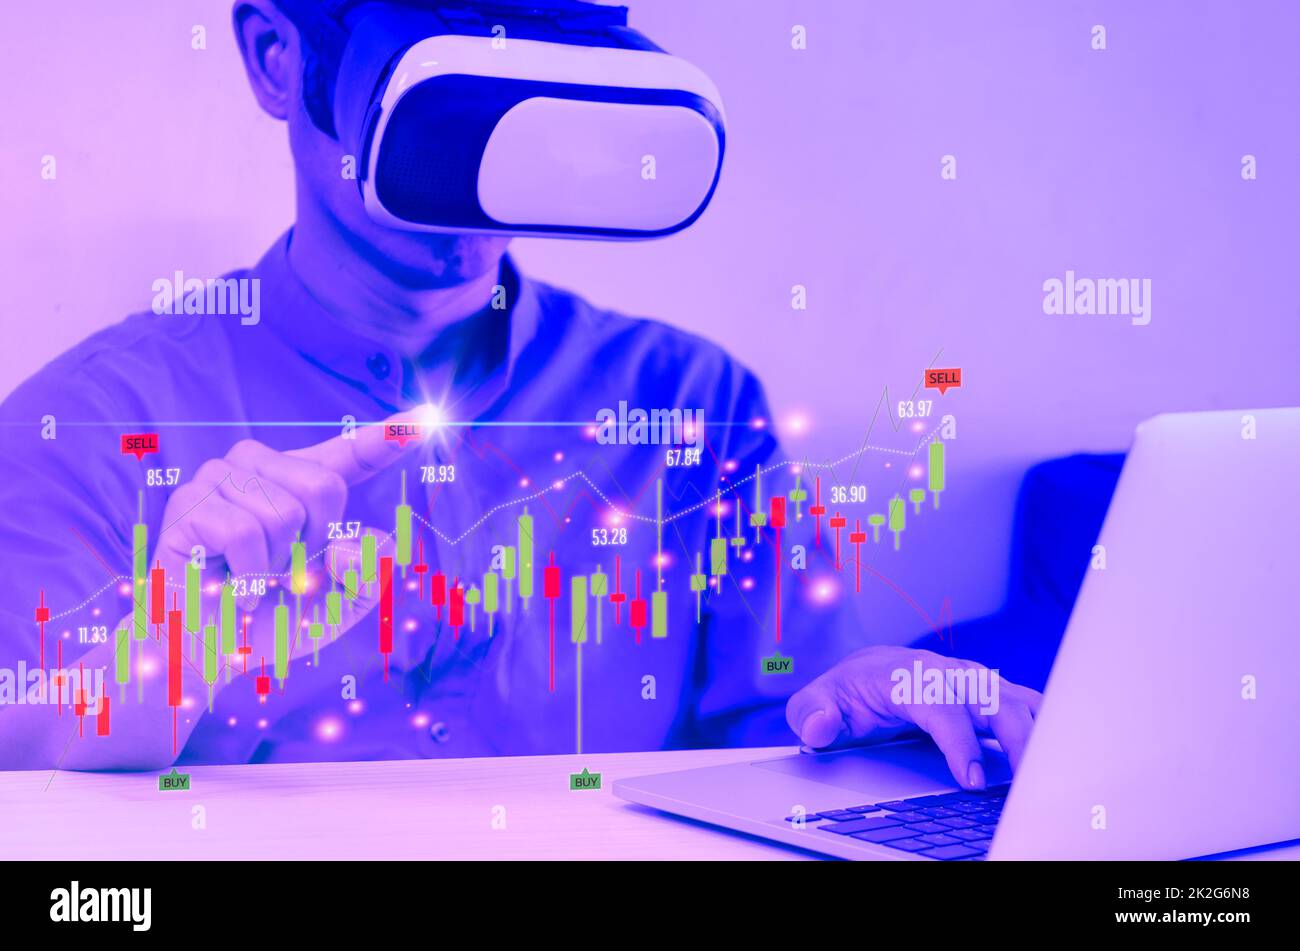 Homme portant des lunettes VR tactile écran virtuel métaverse technologie connexion Internet.Finance et concept d'investissement d'affaires. Fonds d'investissement en actions et crypto Banque D'Images